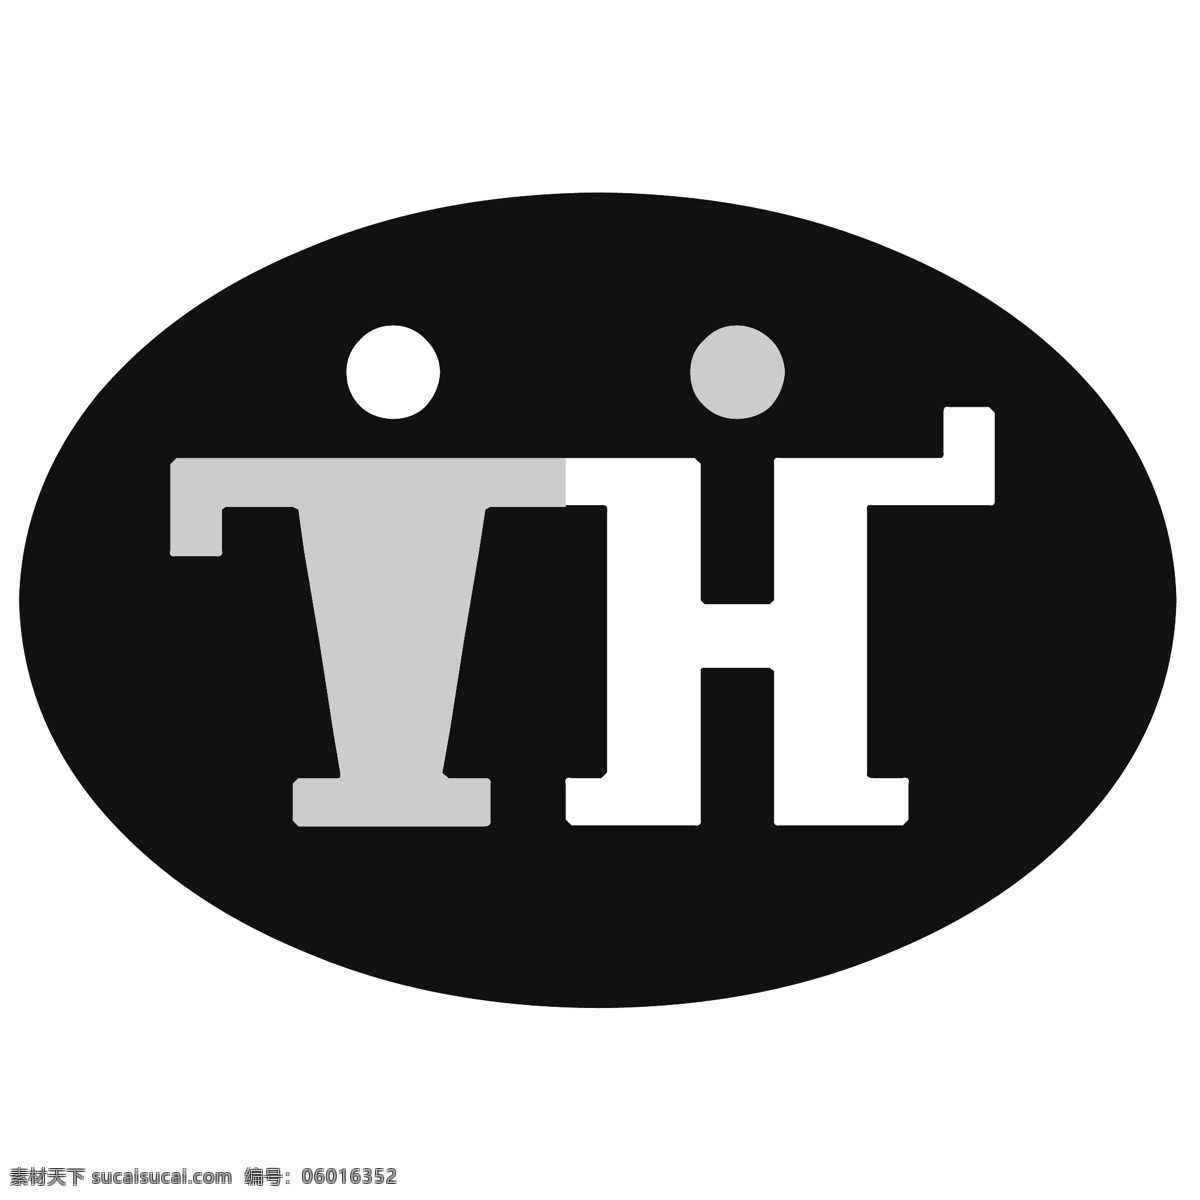 th 矢量标志下载 免费矢量标识 商标 品牌标识 标识 矢量 免费 品牌 公司 白色